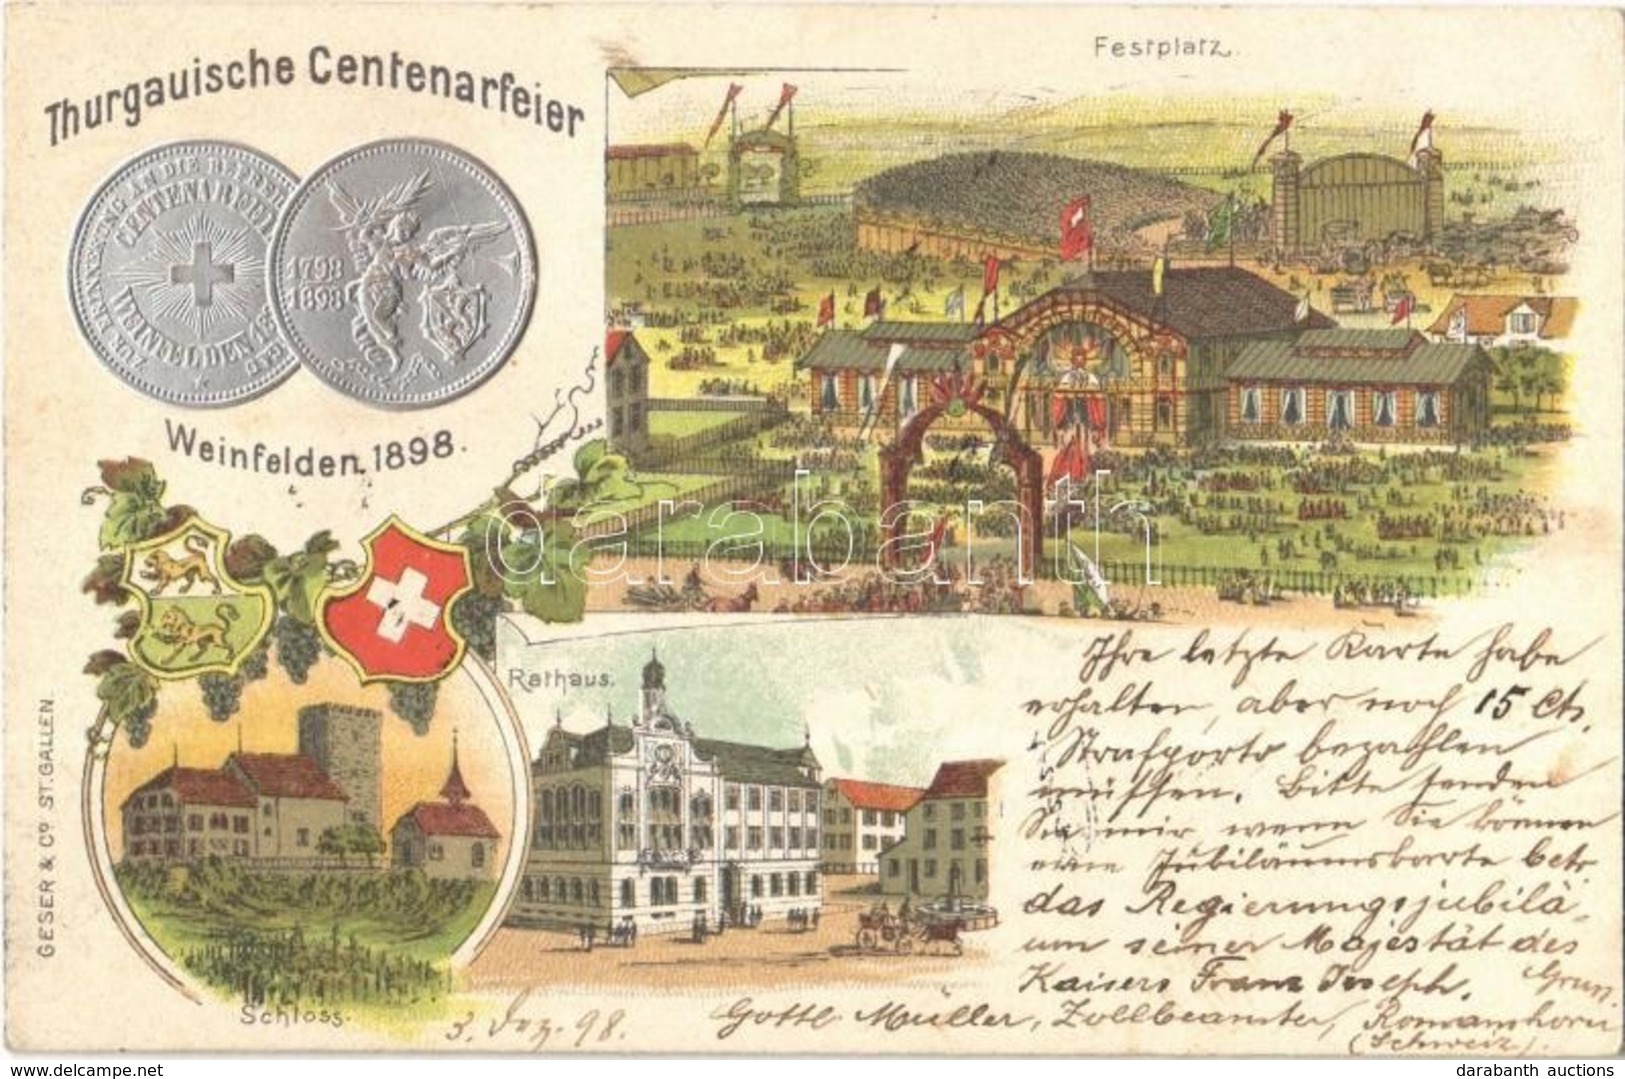 T2/T3 1898 Weinfelden, Thurgauische Centenarfeier, Festplatz, Rathaus, Schloss / Thurgau Centenary Celebration, Festival - Non Classés